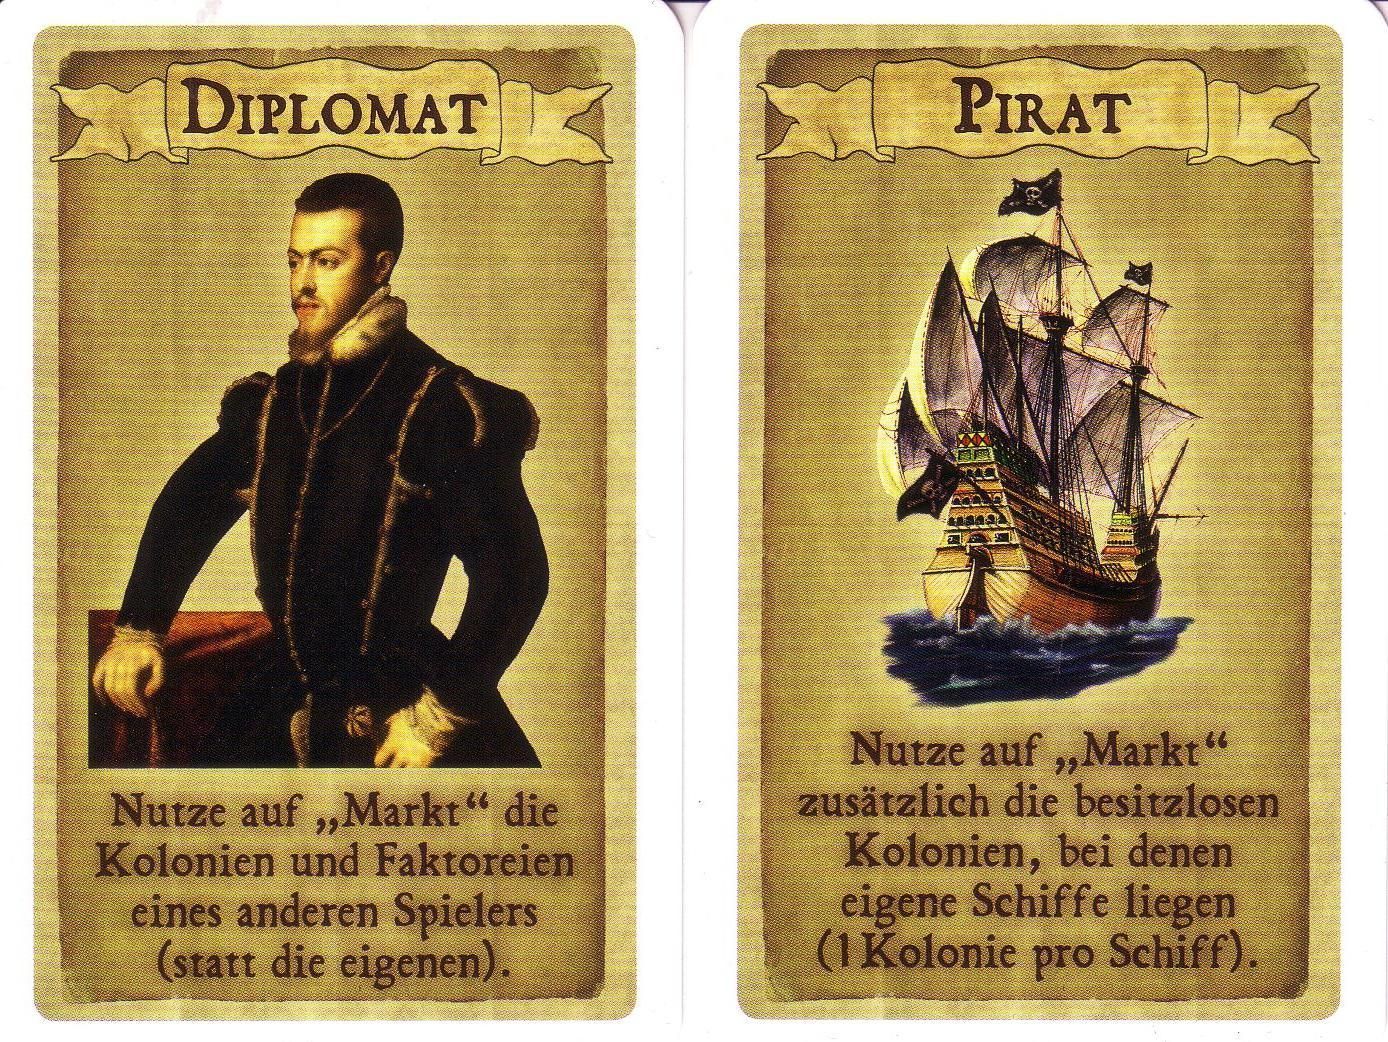 Navegador: Pirates & Diplomats